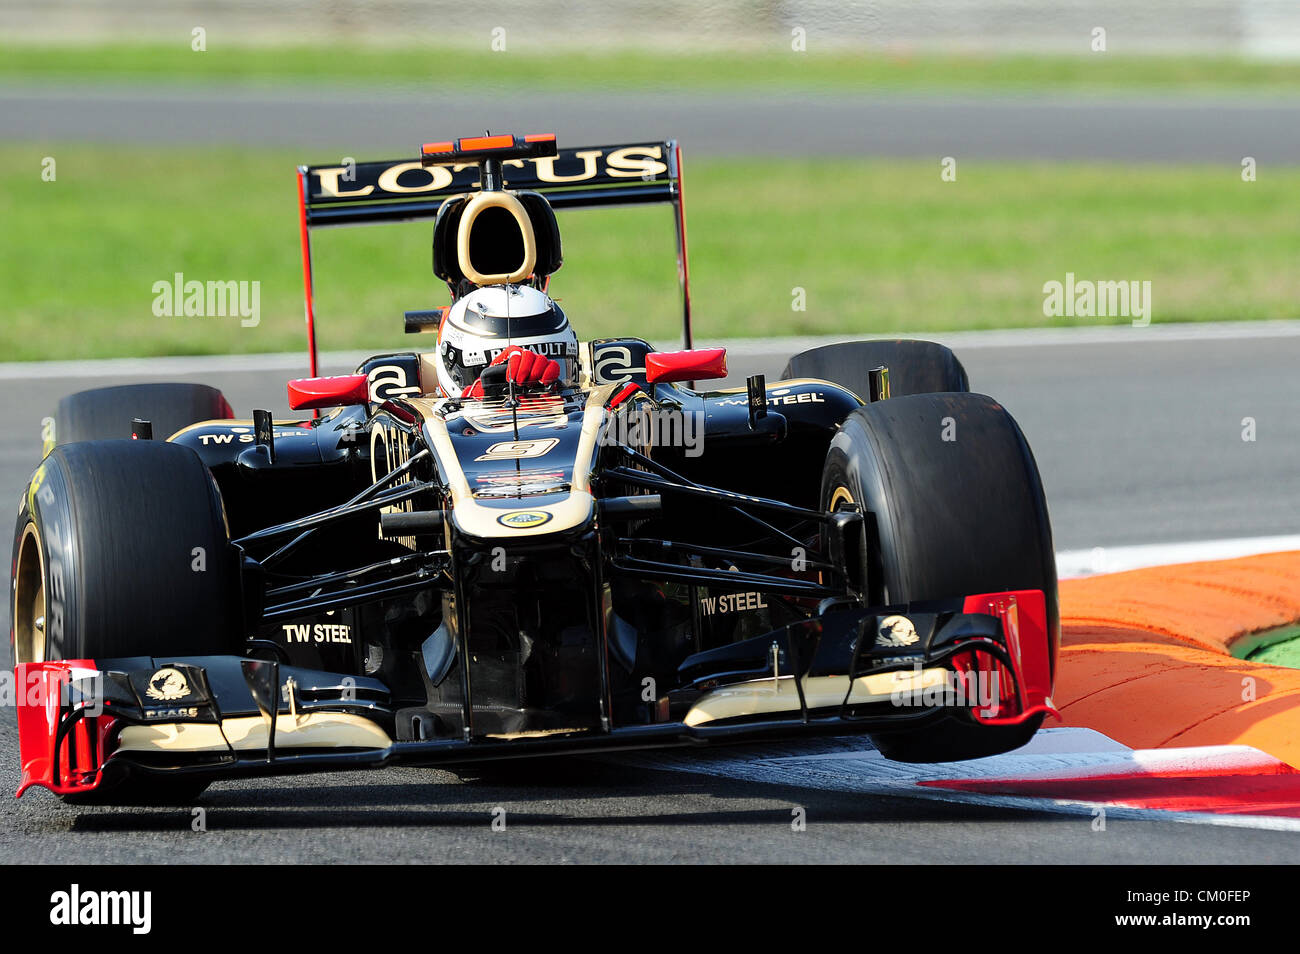 En Monza, Italia. El 8 de septiembre de 2012. Kimi Raikkonen de Lotus en acción durante la jornada de calificación del GP de Italia de 2012. Foto de stock